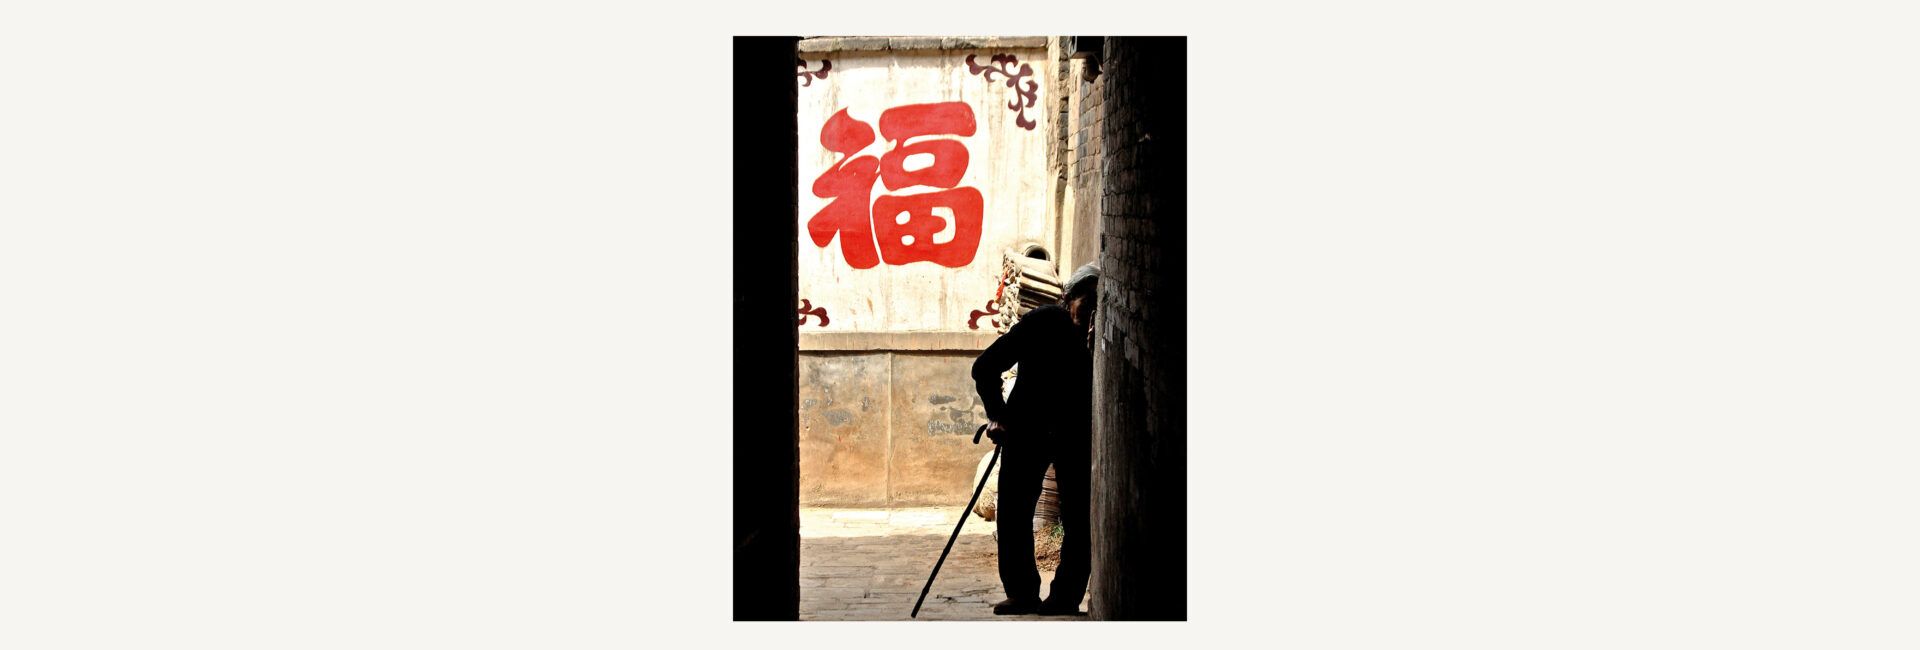 Un passant rencontré dans les rues de Pékin lors d'un voyage en Chine